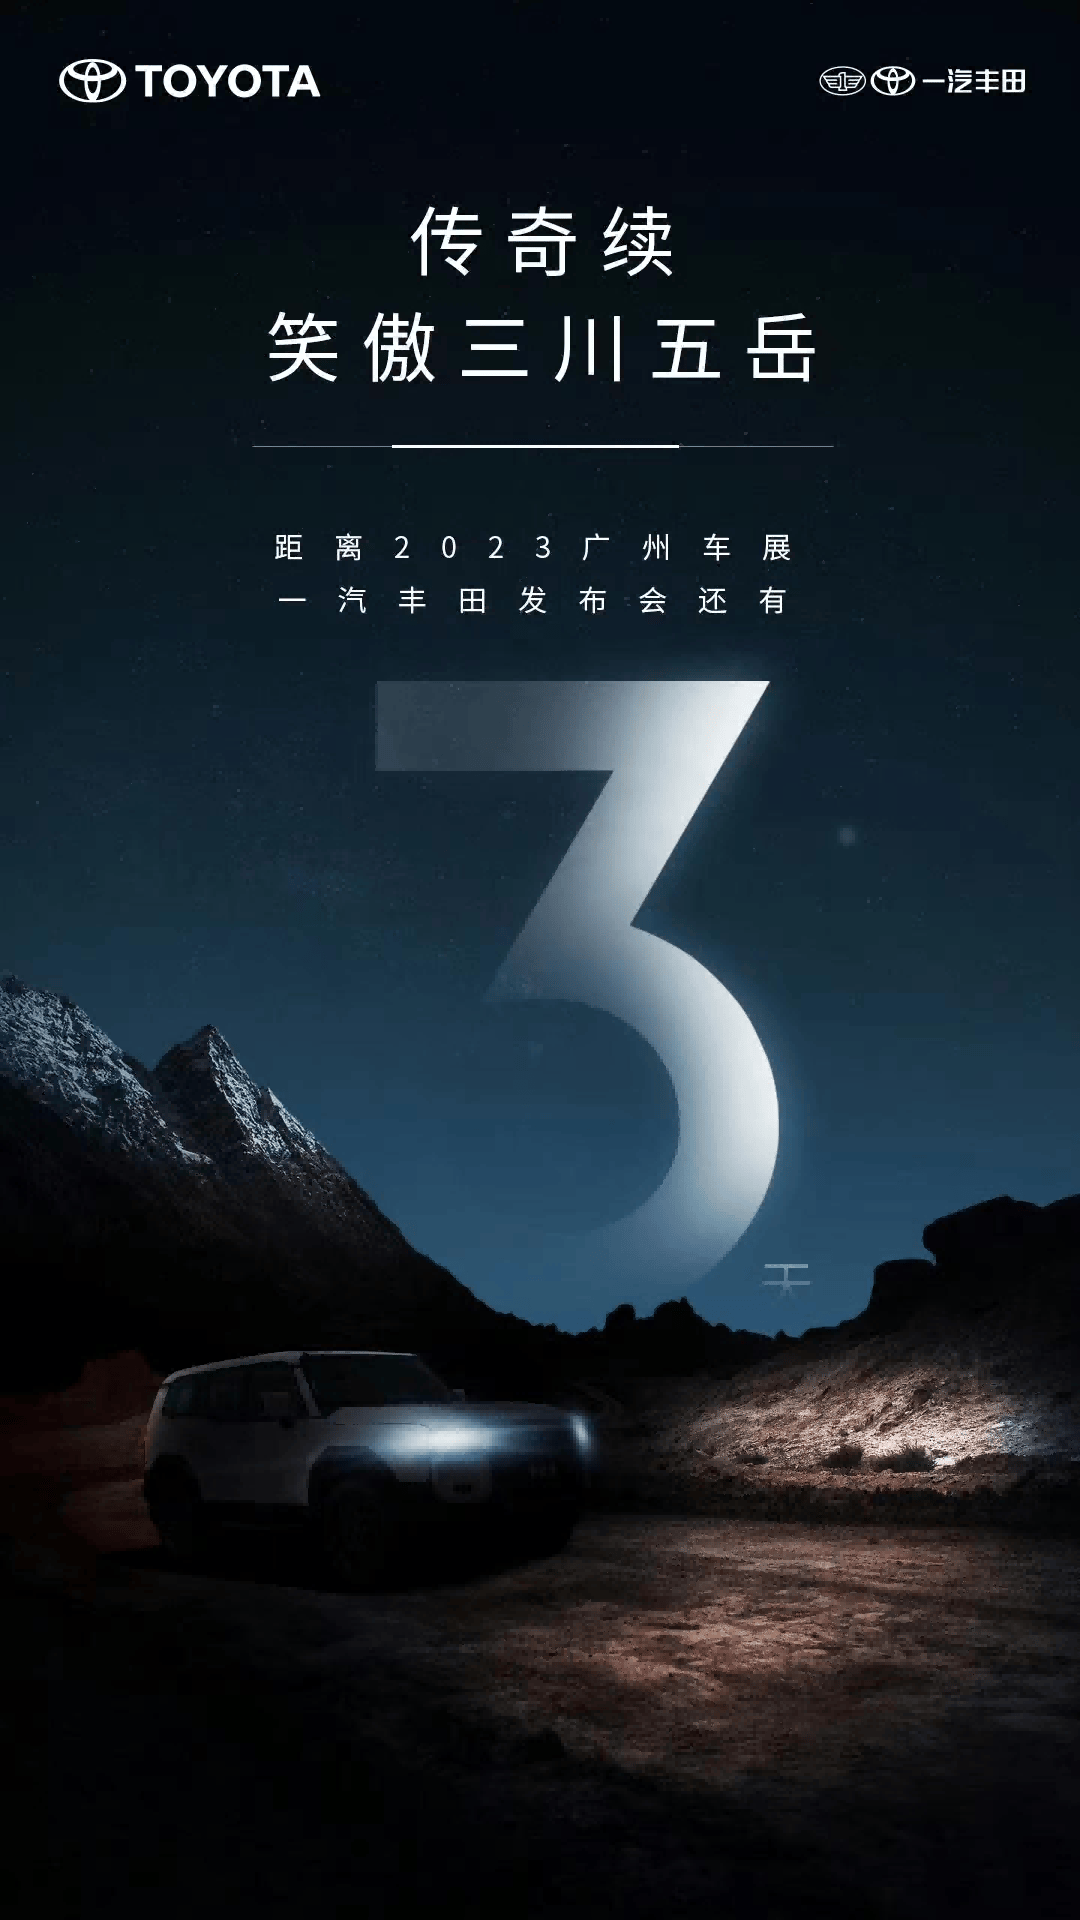 国产全新丰田普拉多将于广州车展首发亮相